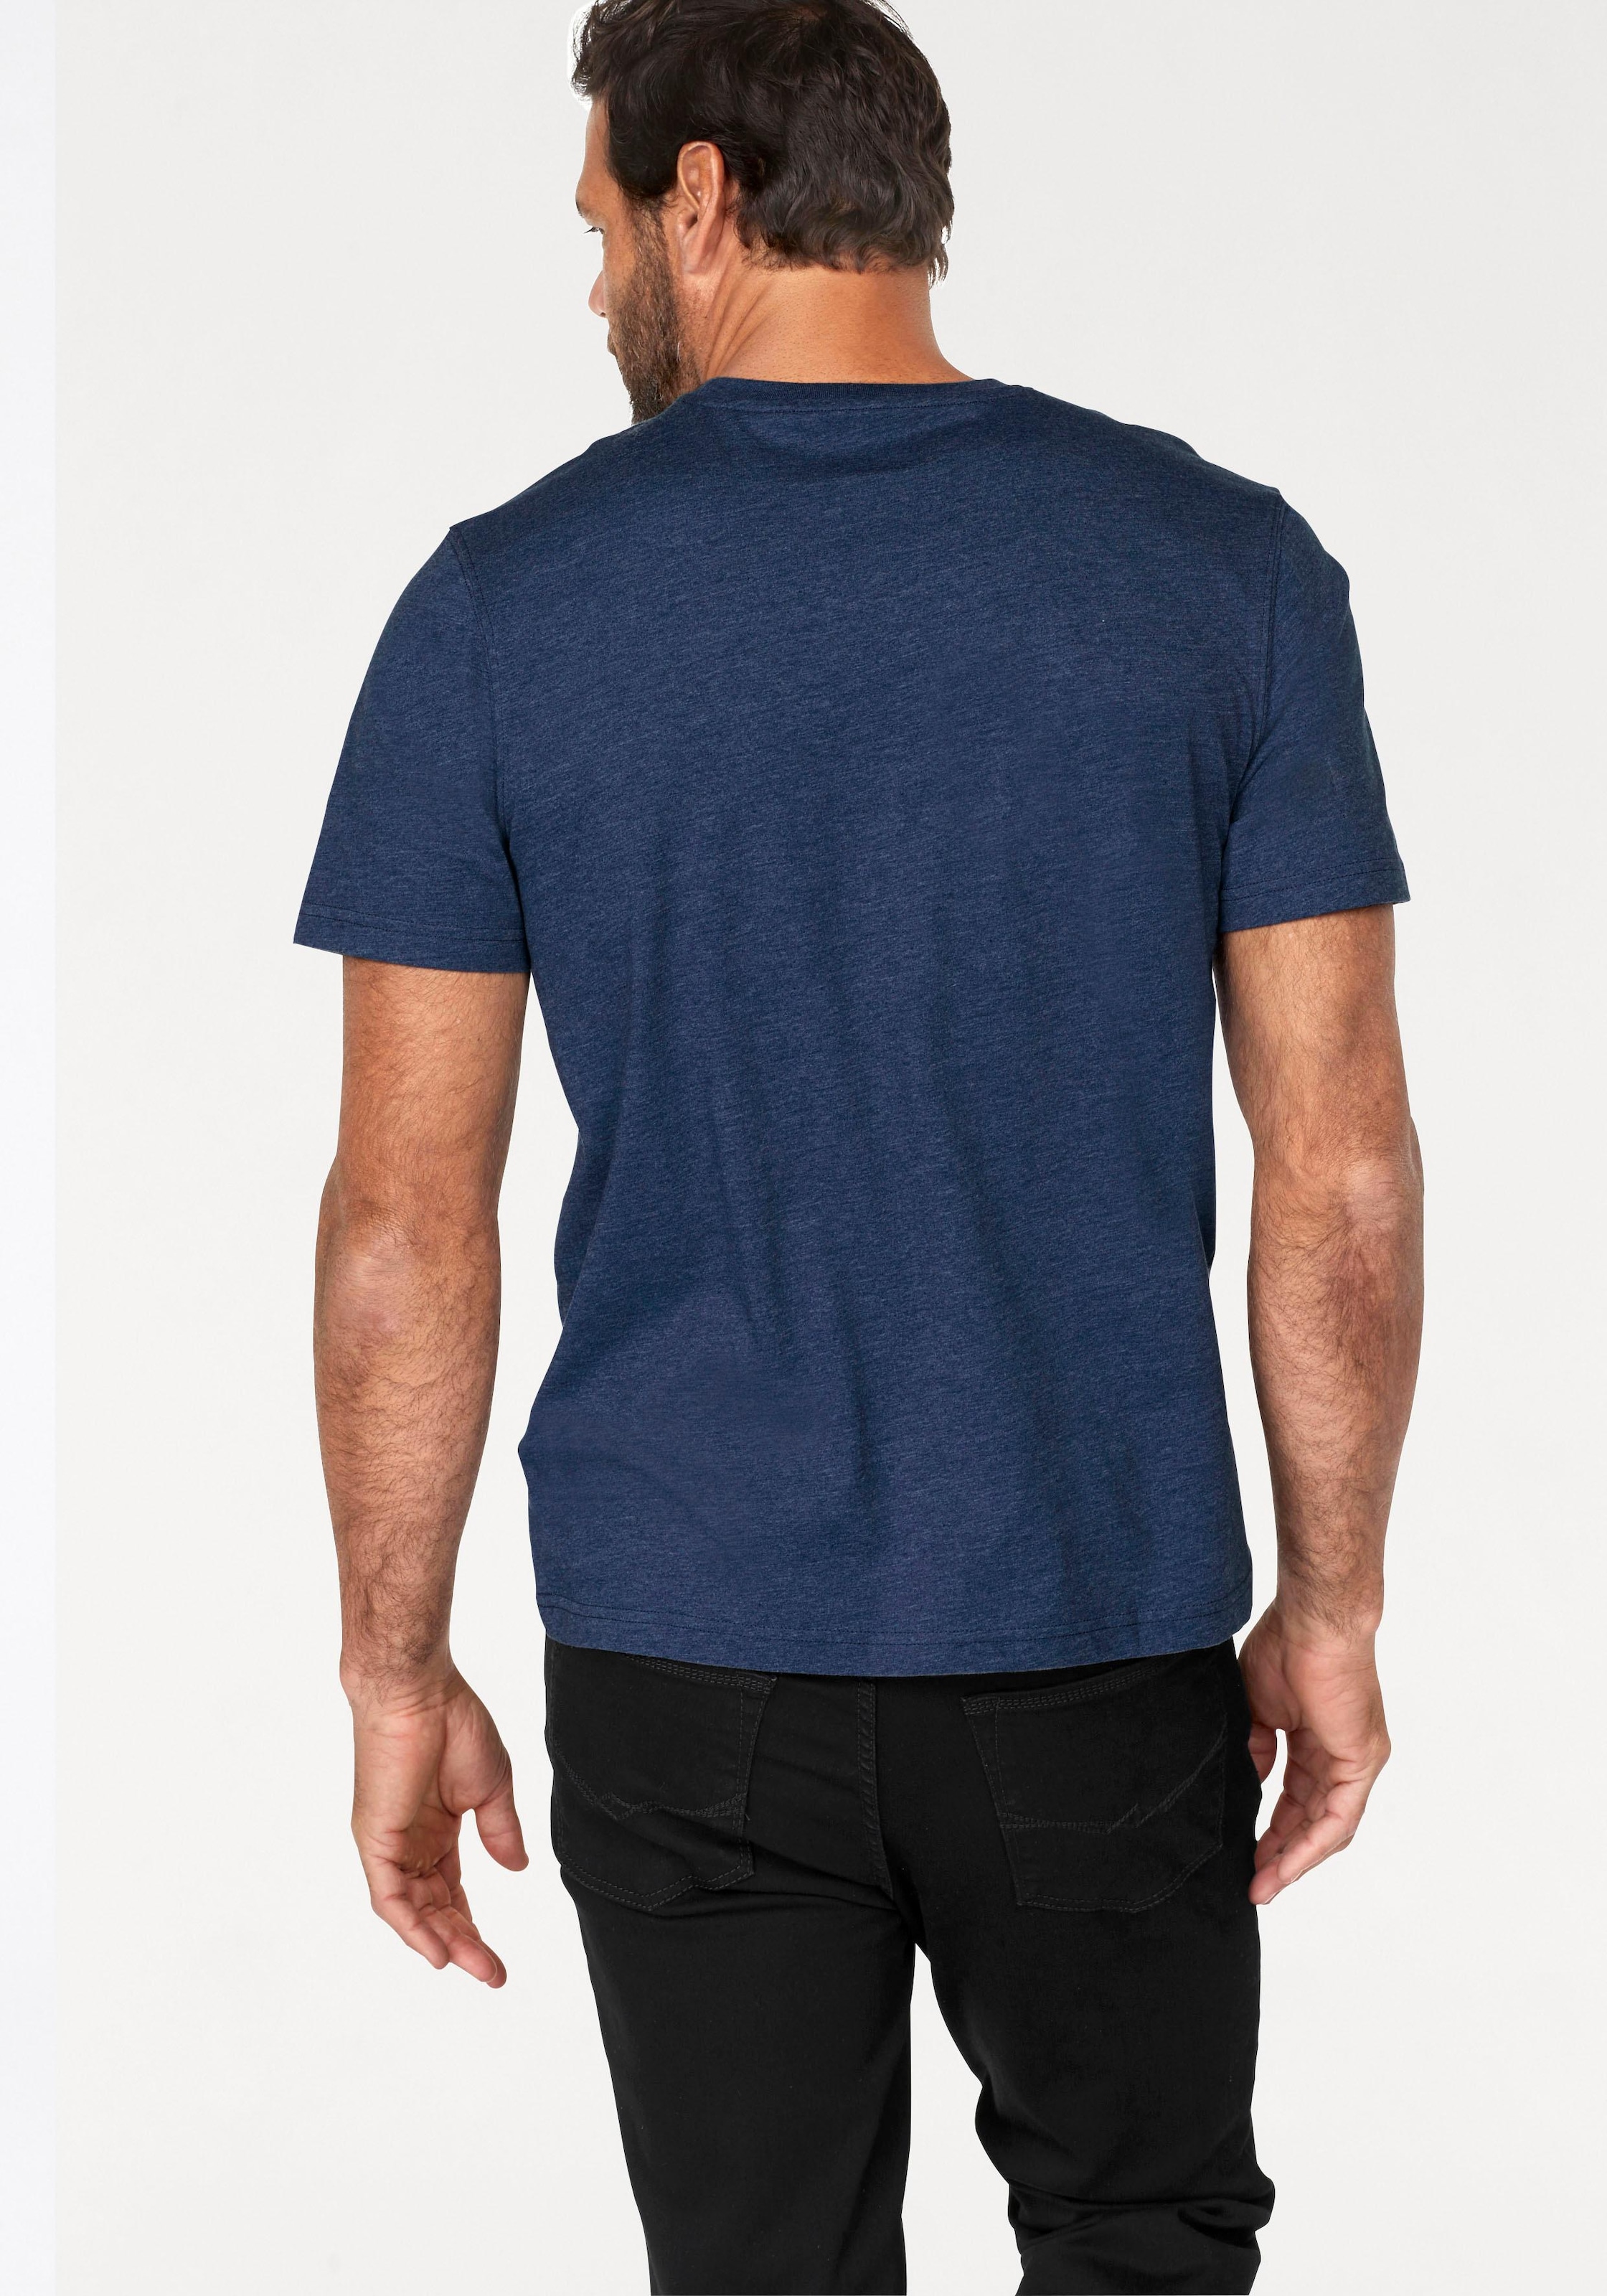 Man's World T-Shirt, perfekt auch als Unterzieh T-shirt